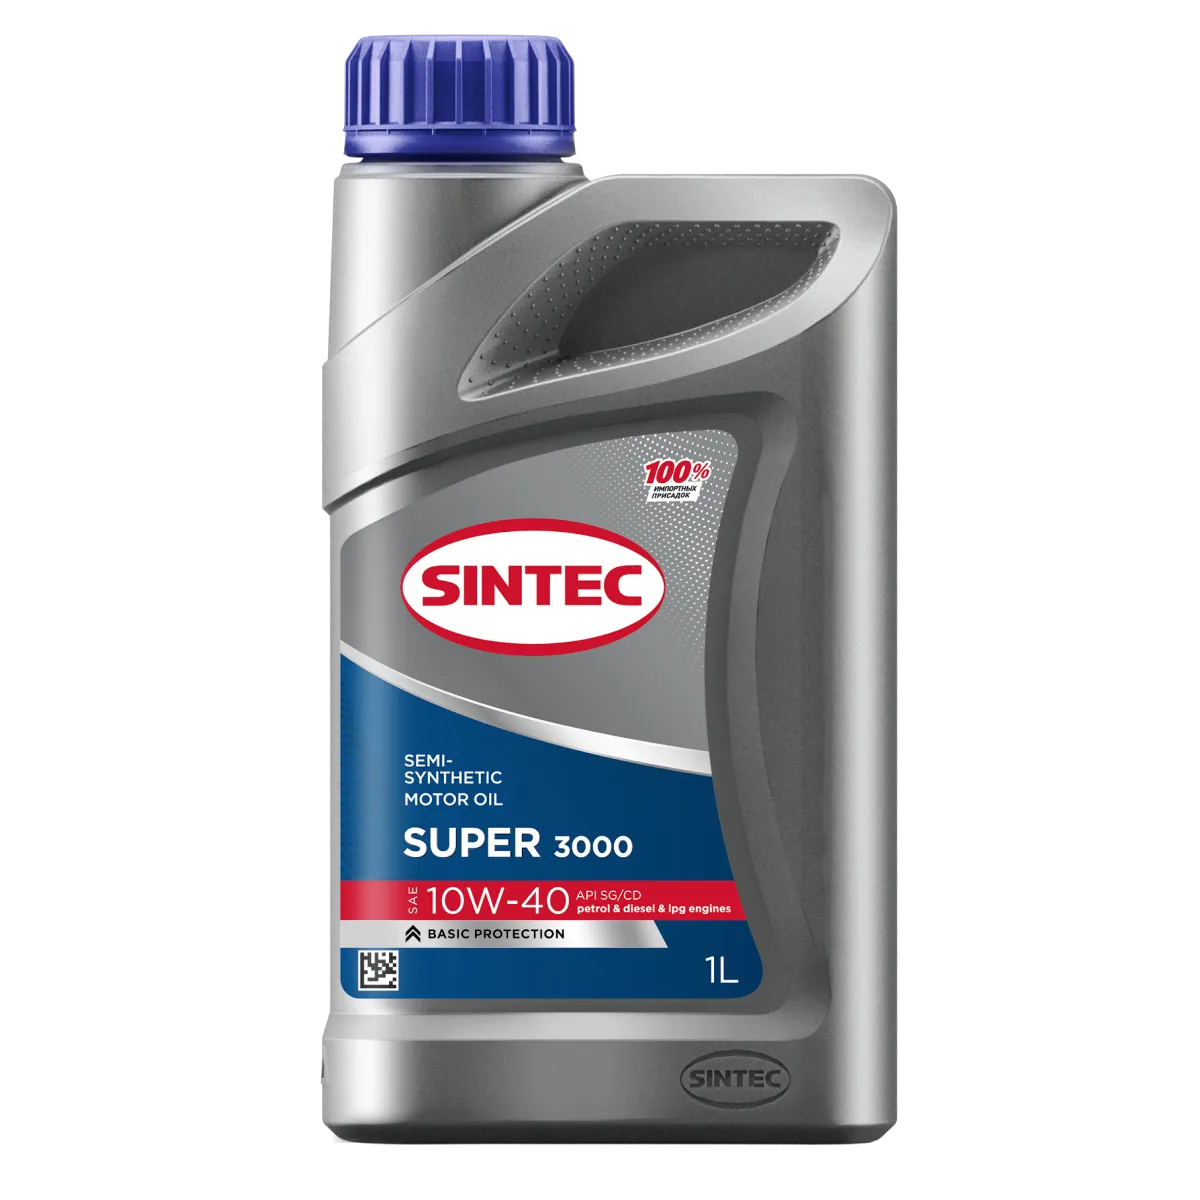 Sintec Super 3000 SAE 10W-40 API SG/CD Масла для легковых автомобилей: описание, применение, свойства, где
							купить